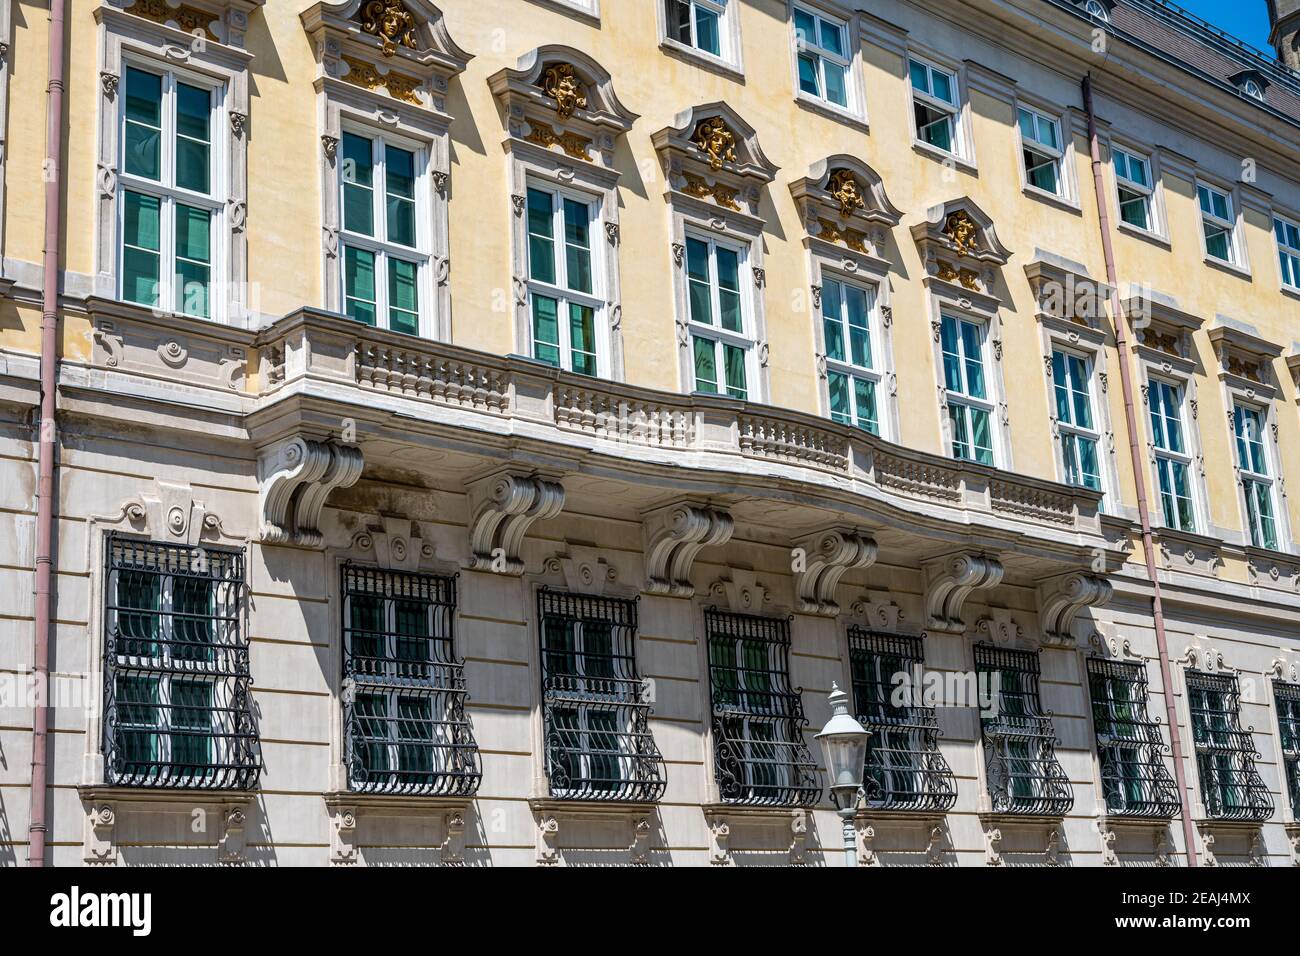 Magnifique bâtiment historique vu dans la vieille ville de Vienne, Autriche Banque D'Images